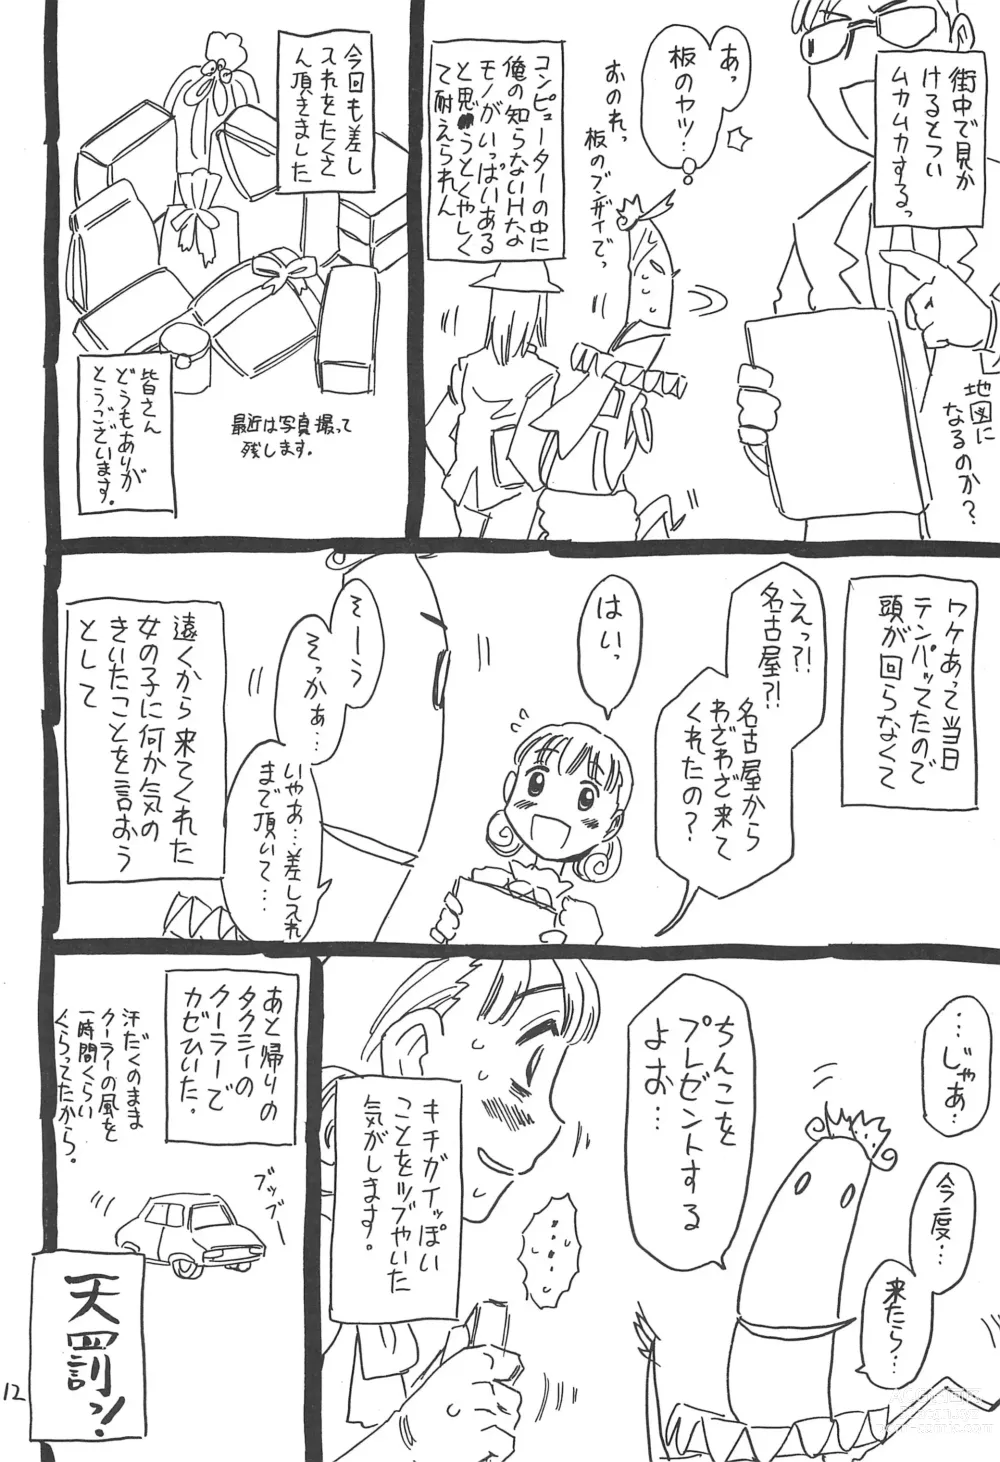 Page 12 of doujinshi Hyakka Shokkou Atopink